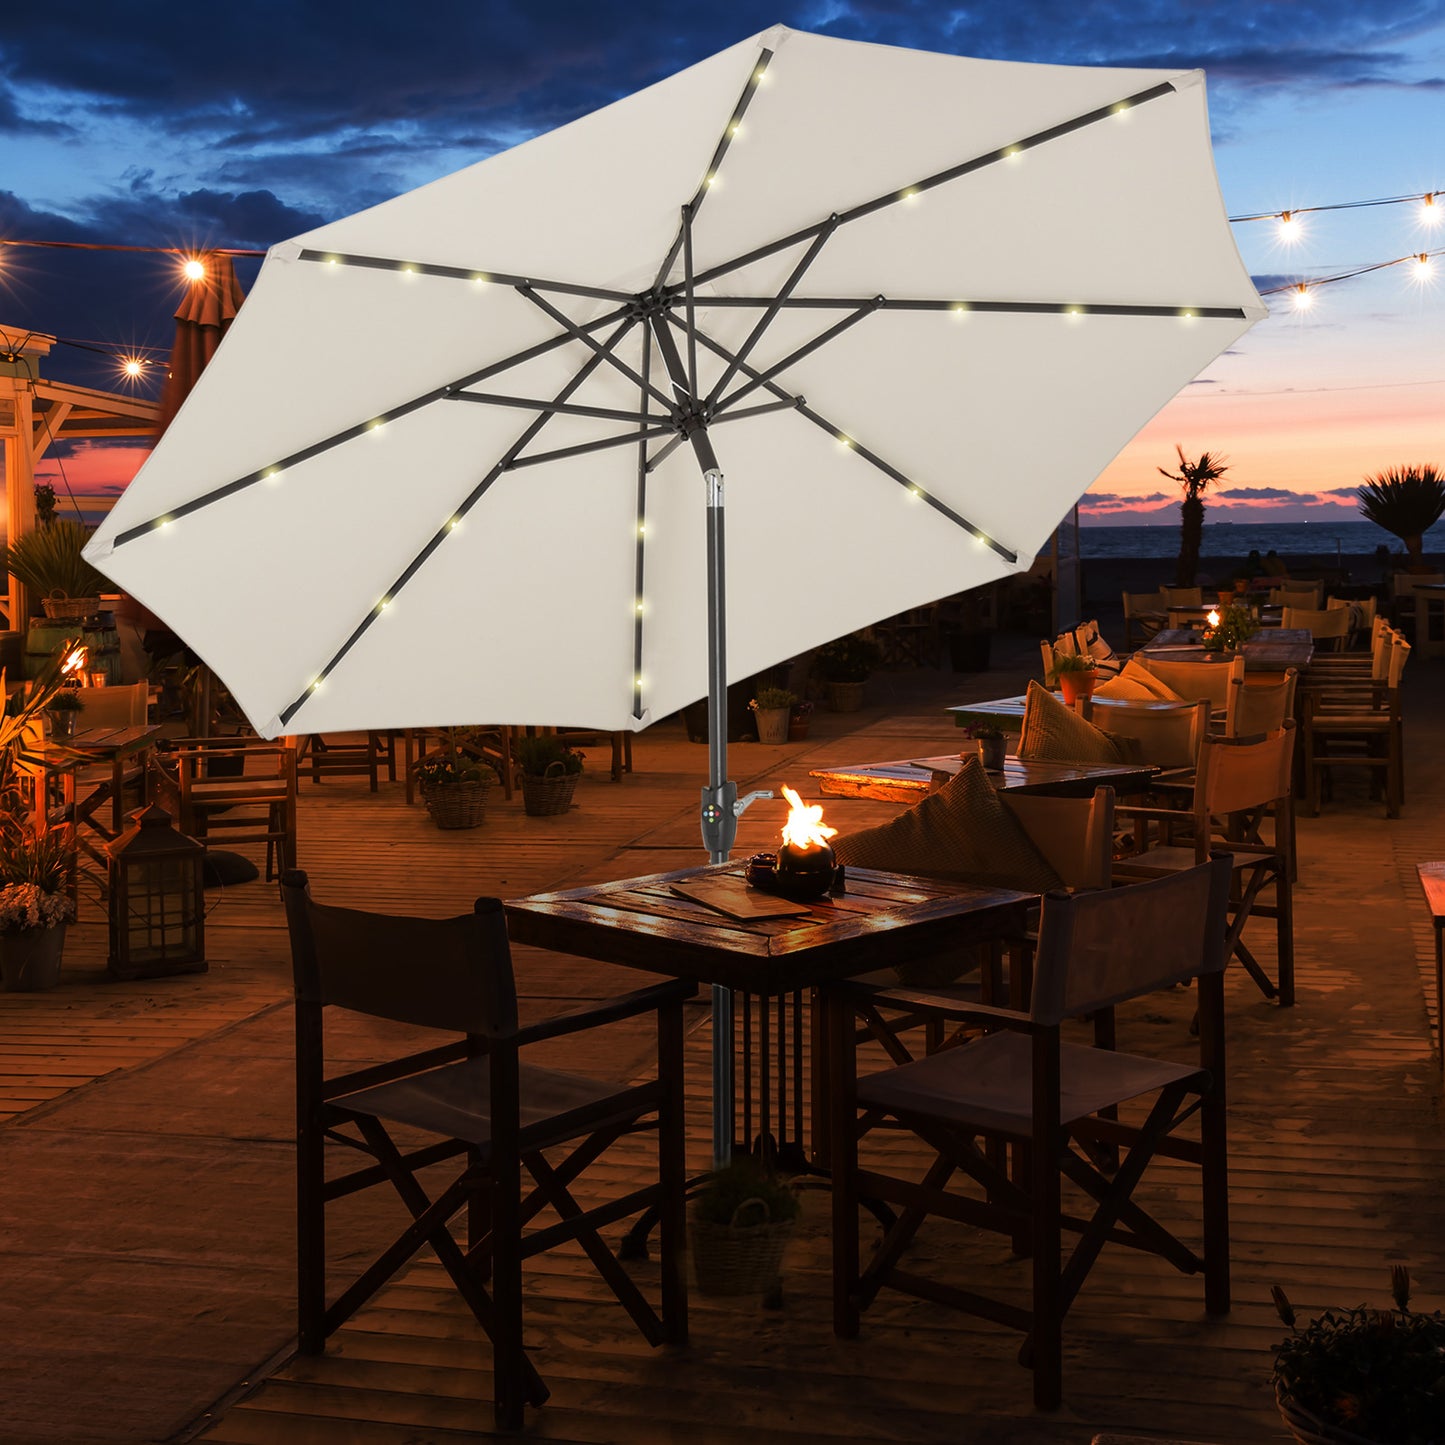 Outsunny Garden Parasol Outdoor Tilt Sun Umbrella Patio 24 LED Light Hand Crank Off-white